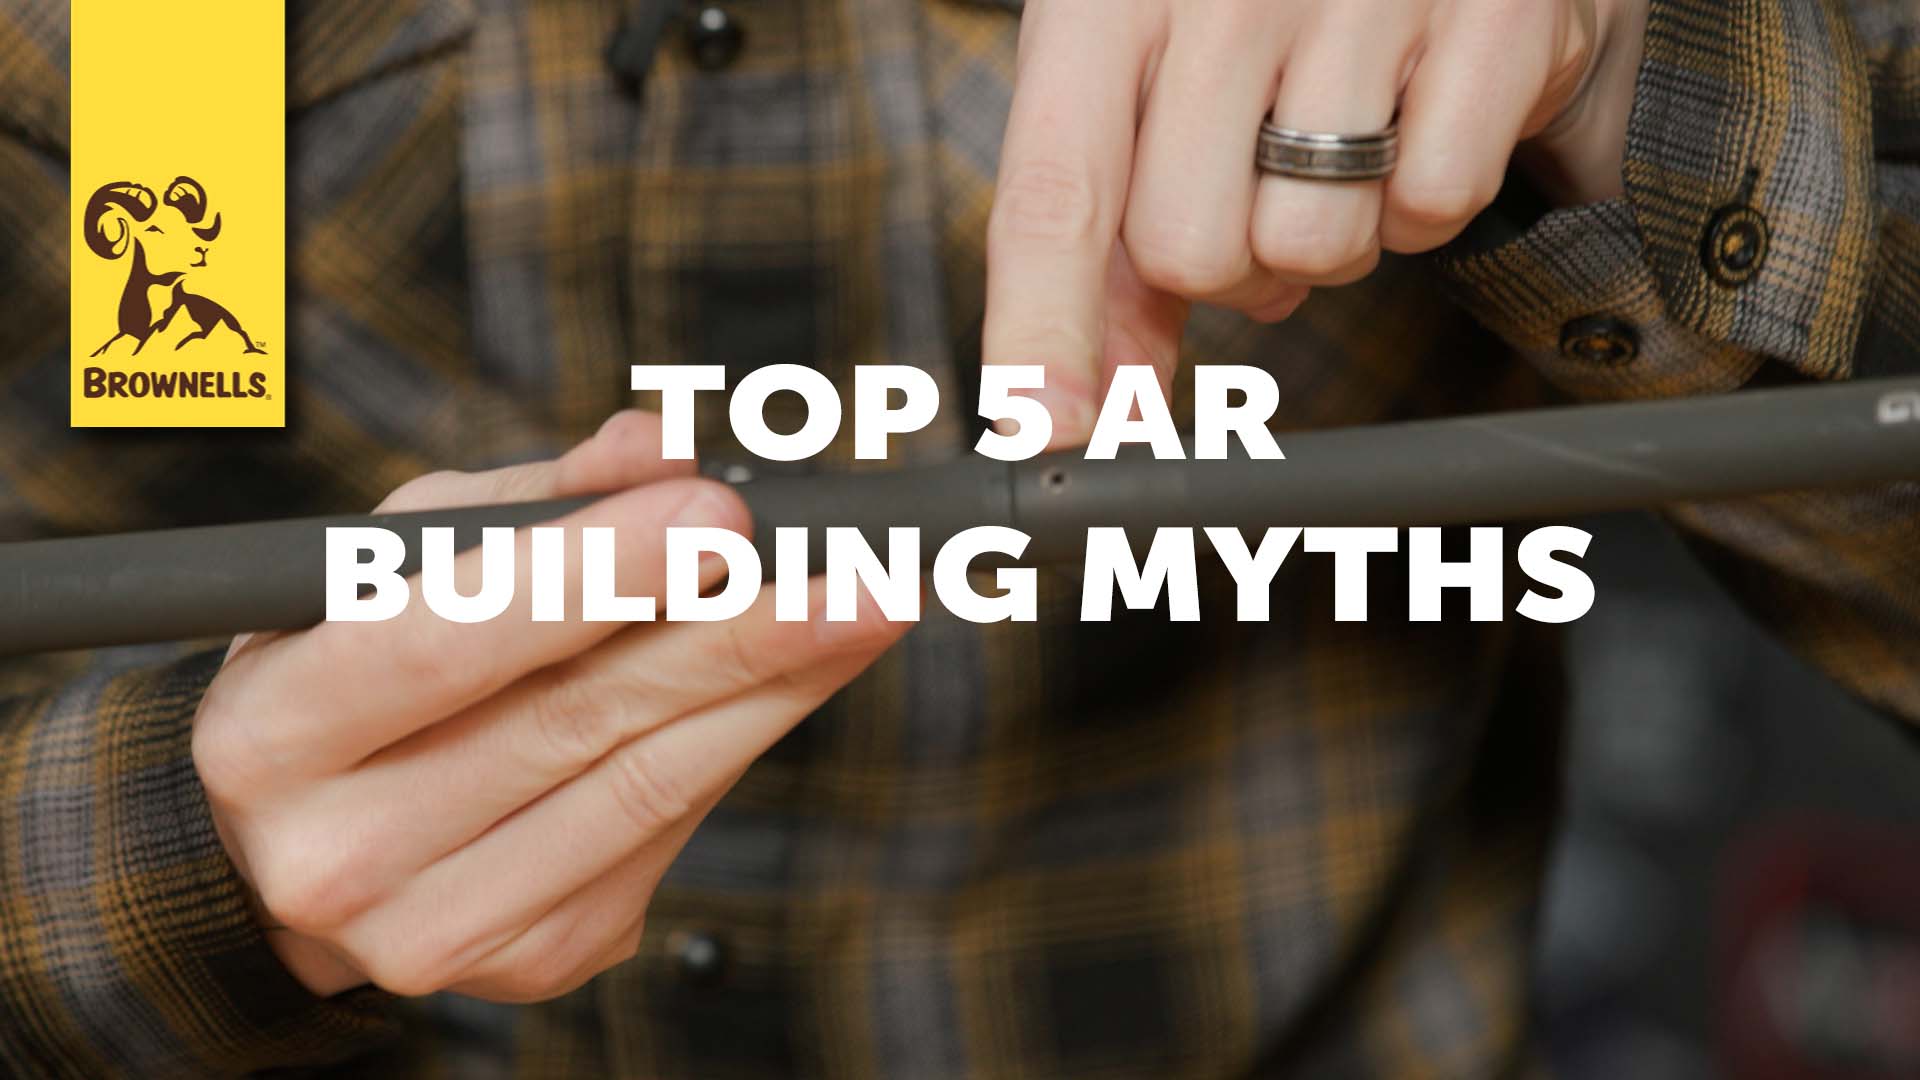 SmythBusters: Top 5 AR Building Myths